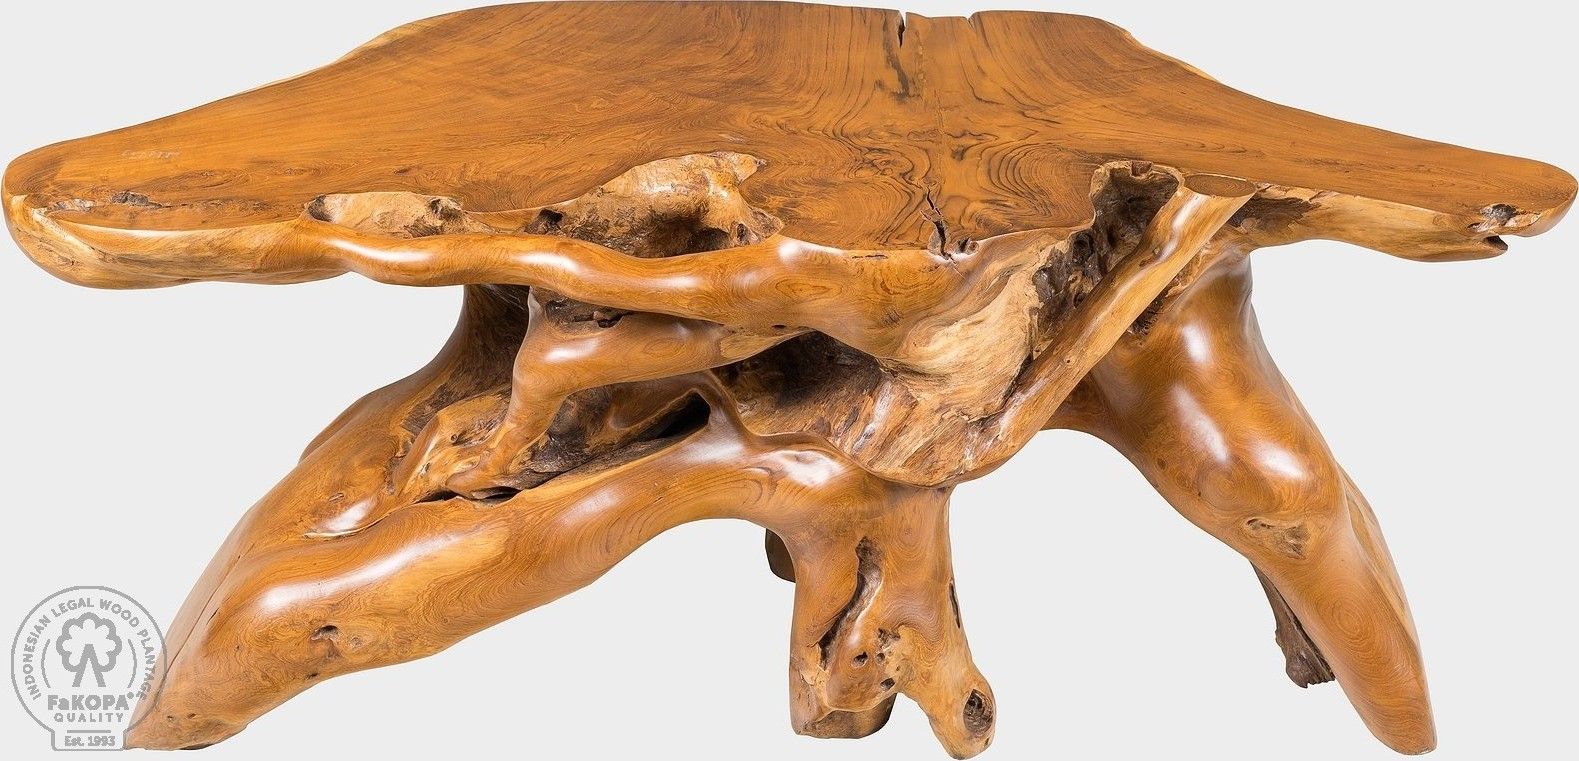 FaKOPA Konfereční stolek z jednoho kusu masivního dřeva Jess Mdum - M DUM.cz